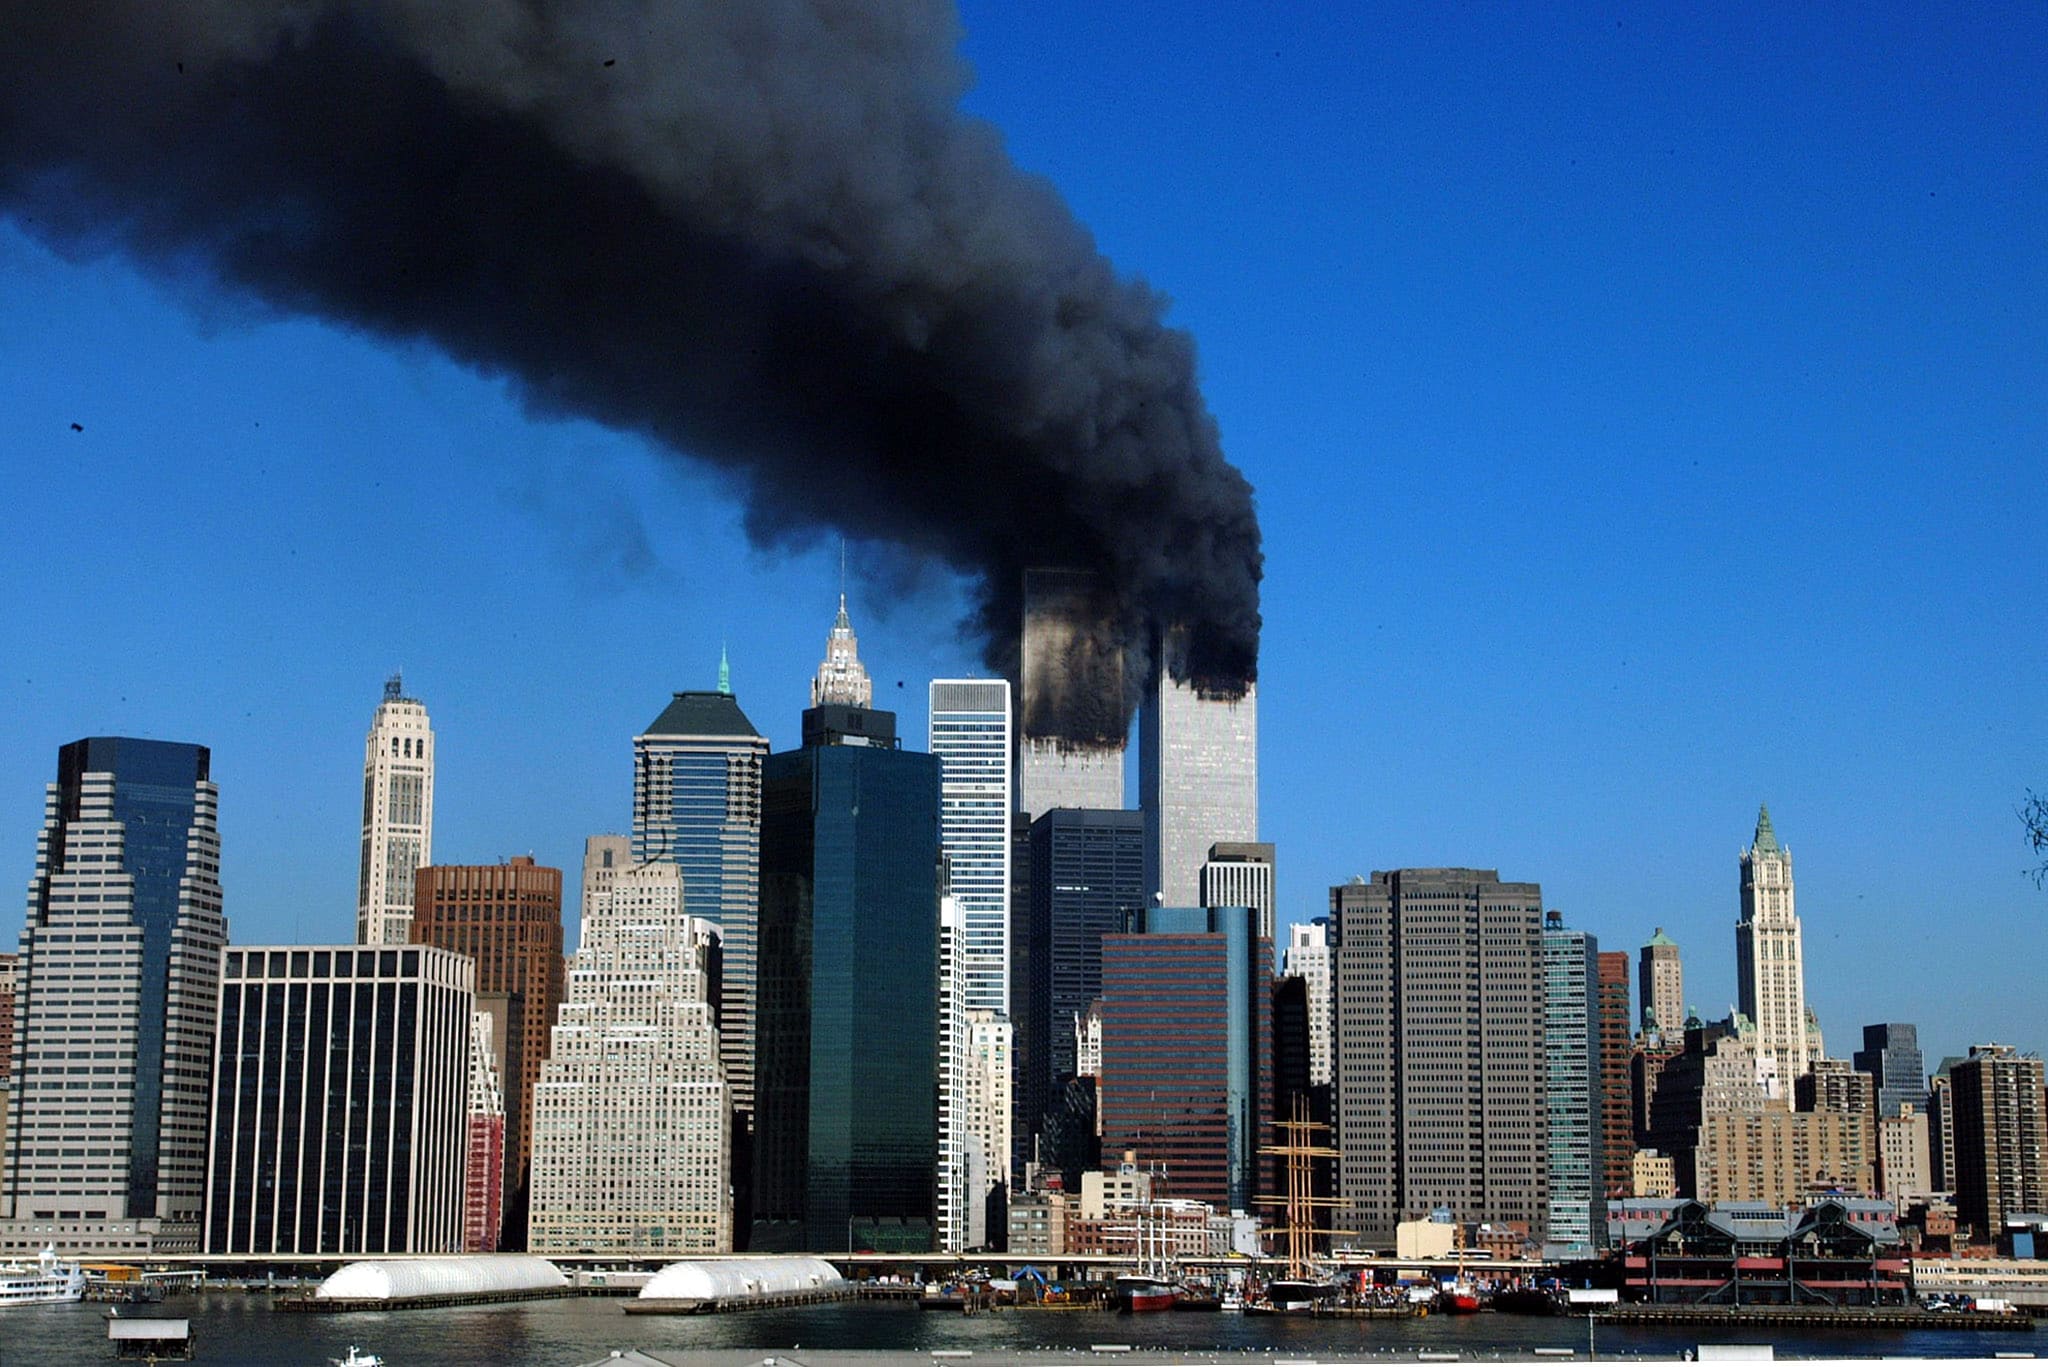 Poco dopo il primo schianto, alle 9.03 ore locali, un altro aereo di linea della United Airlines dirottato da altri 5 attentatori si schianta sulla Torre sud del World Trade Center di New York